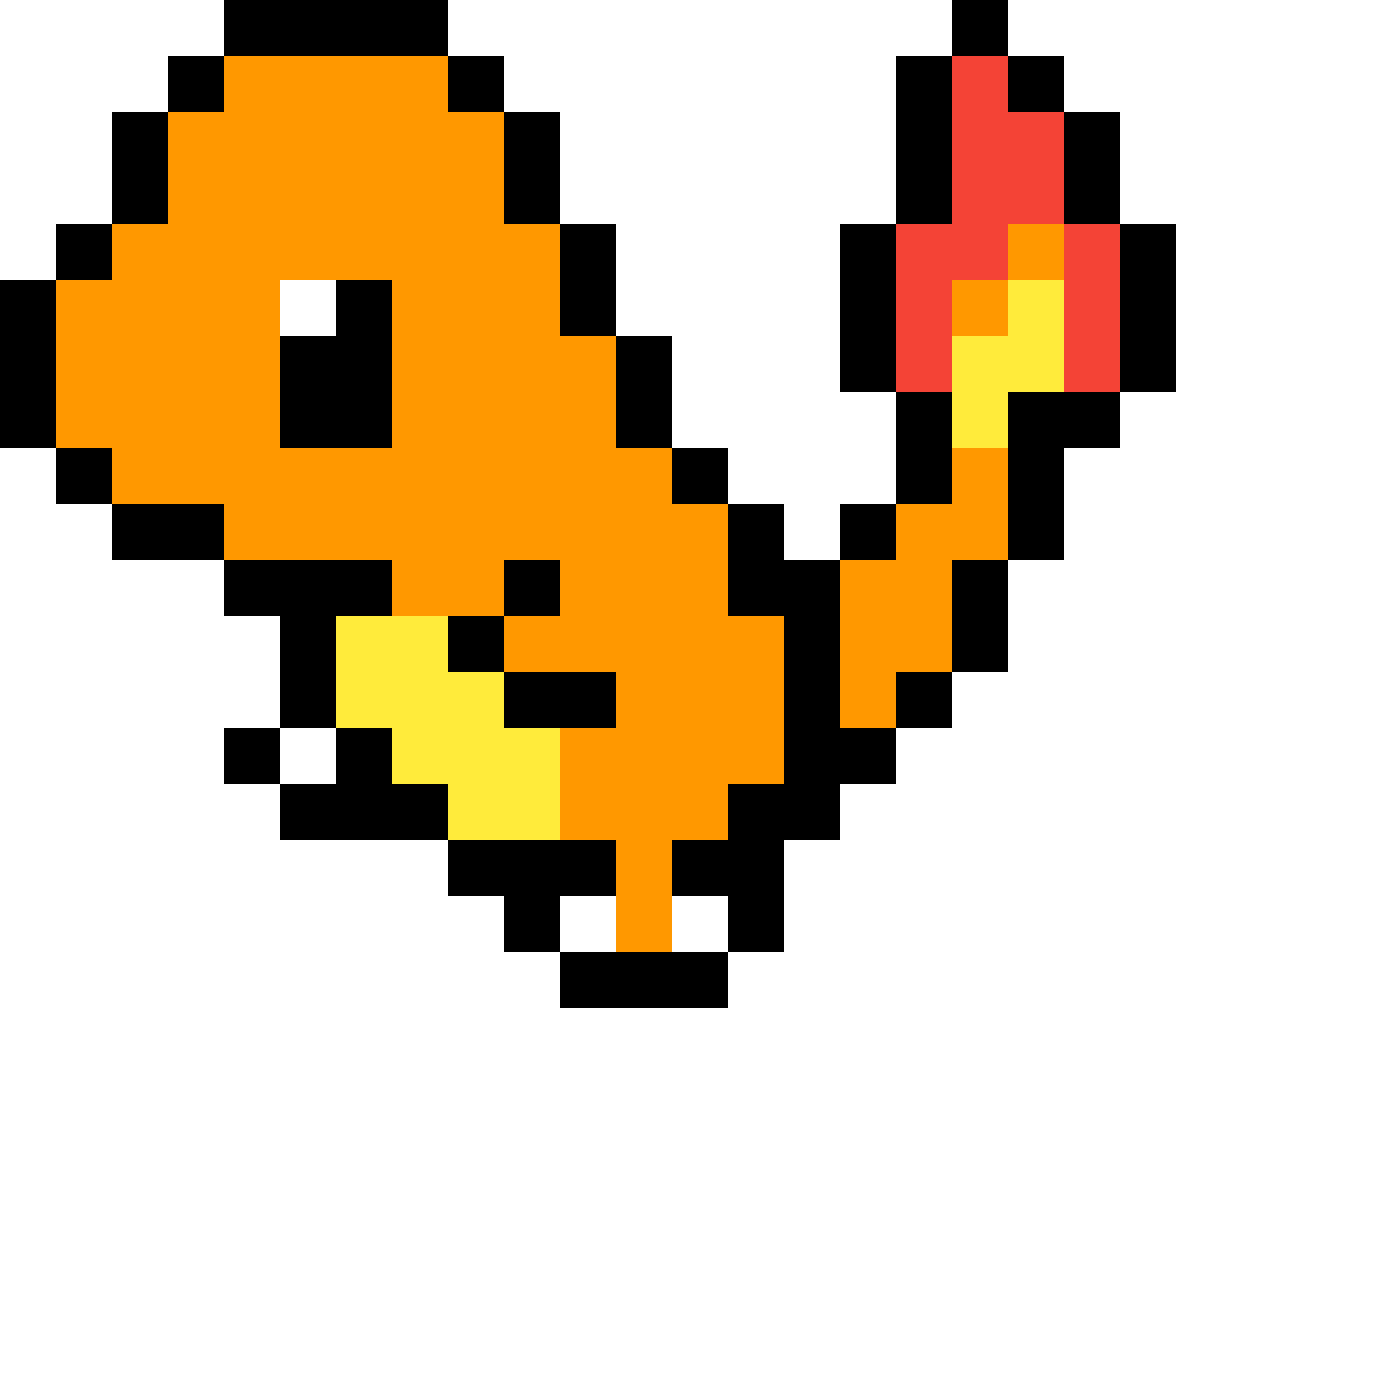 Pikachu charmander pixel.